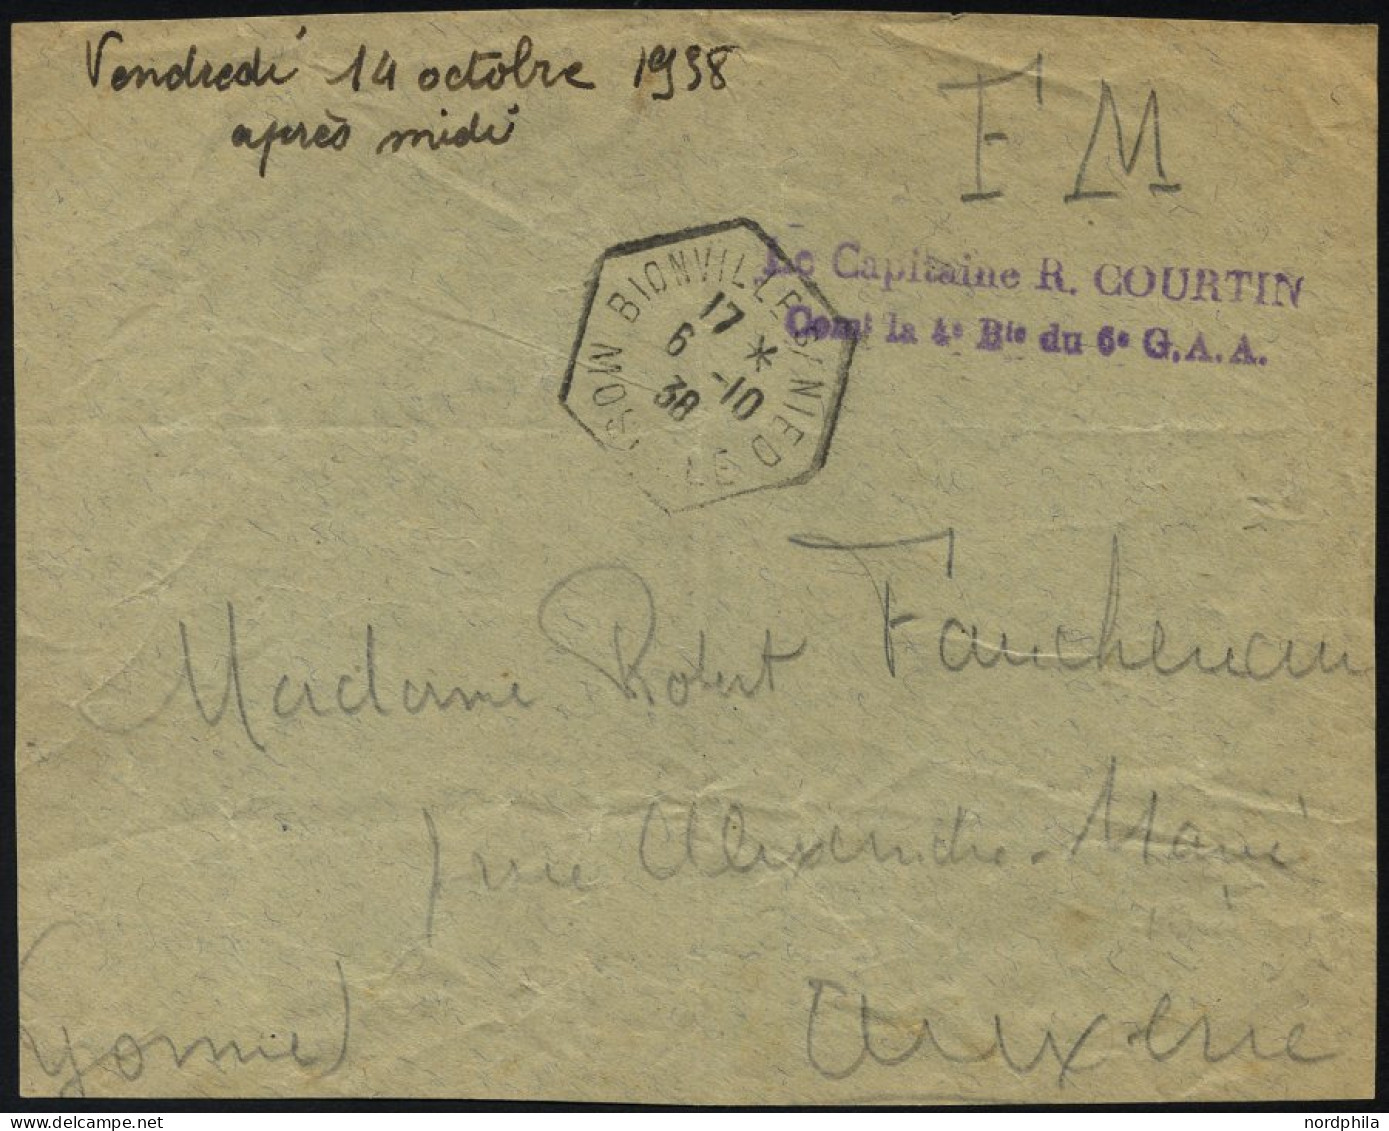 FRANKREICH FELDPOST 1938, Violetter Absenderstempel Le Capitaine R. Courtin, Con La 4 D Du 6 G.A.A. Auf Briefvorderseite - Oorlog 1939-45